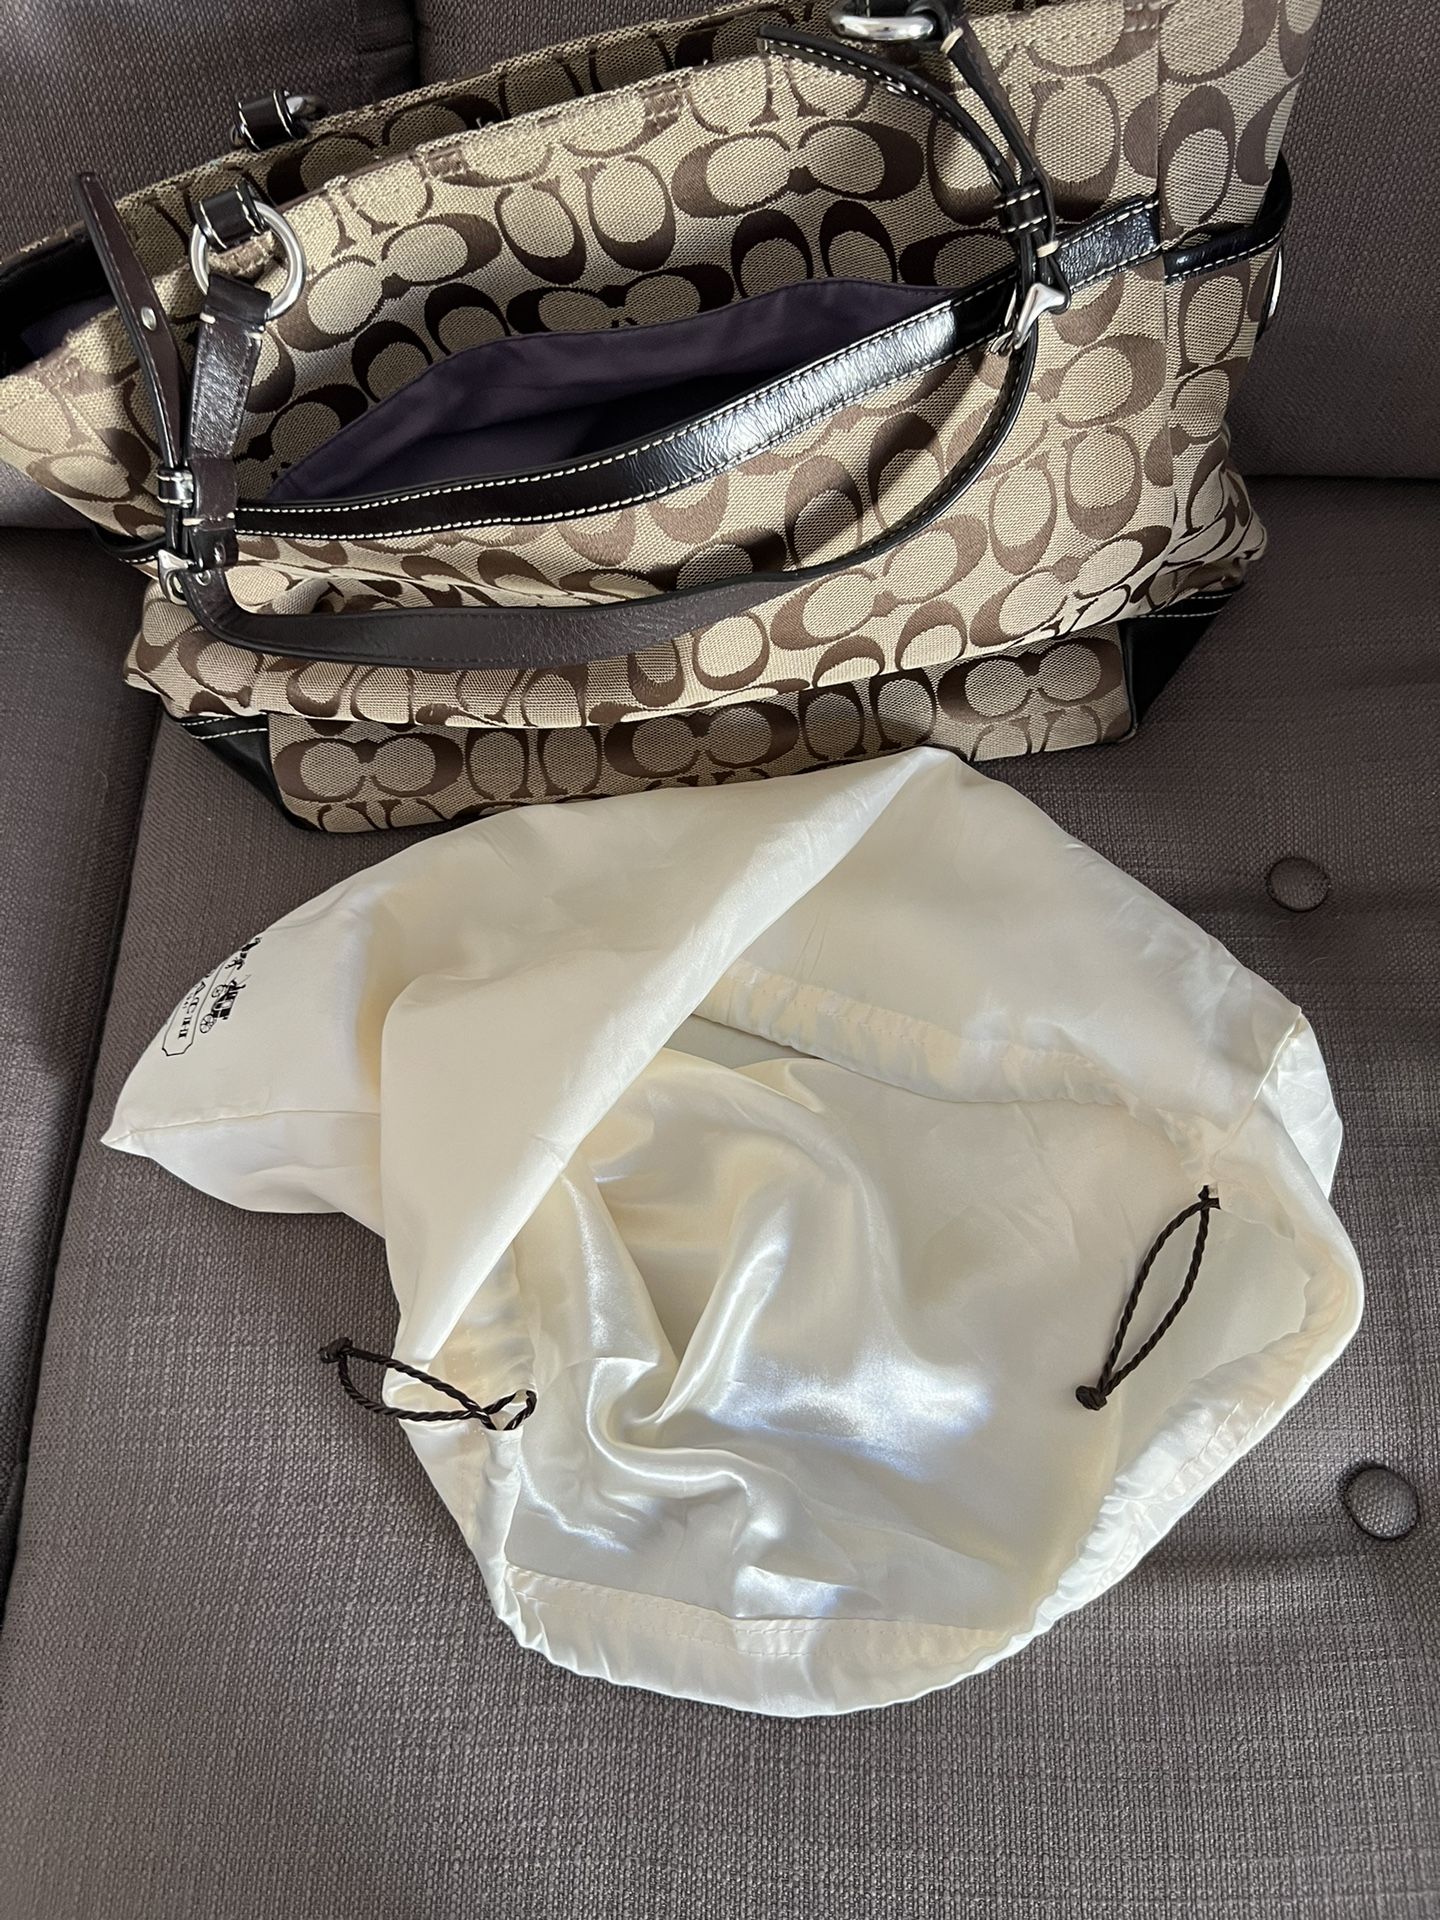 Travel COACH Bag/Purse